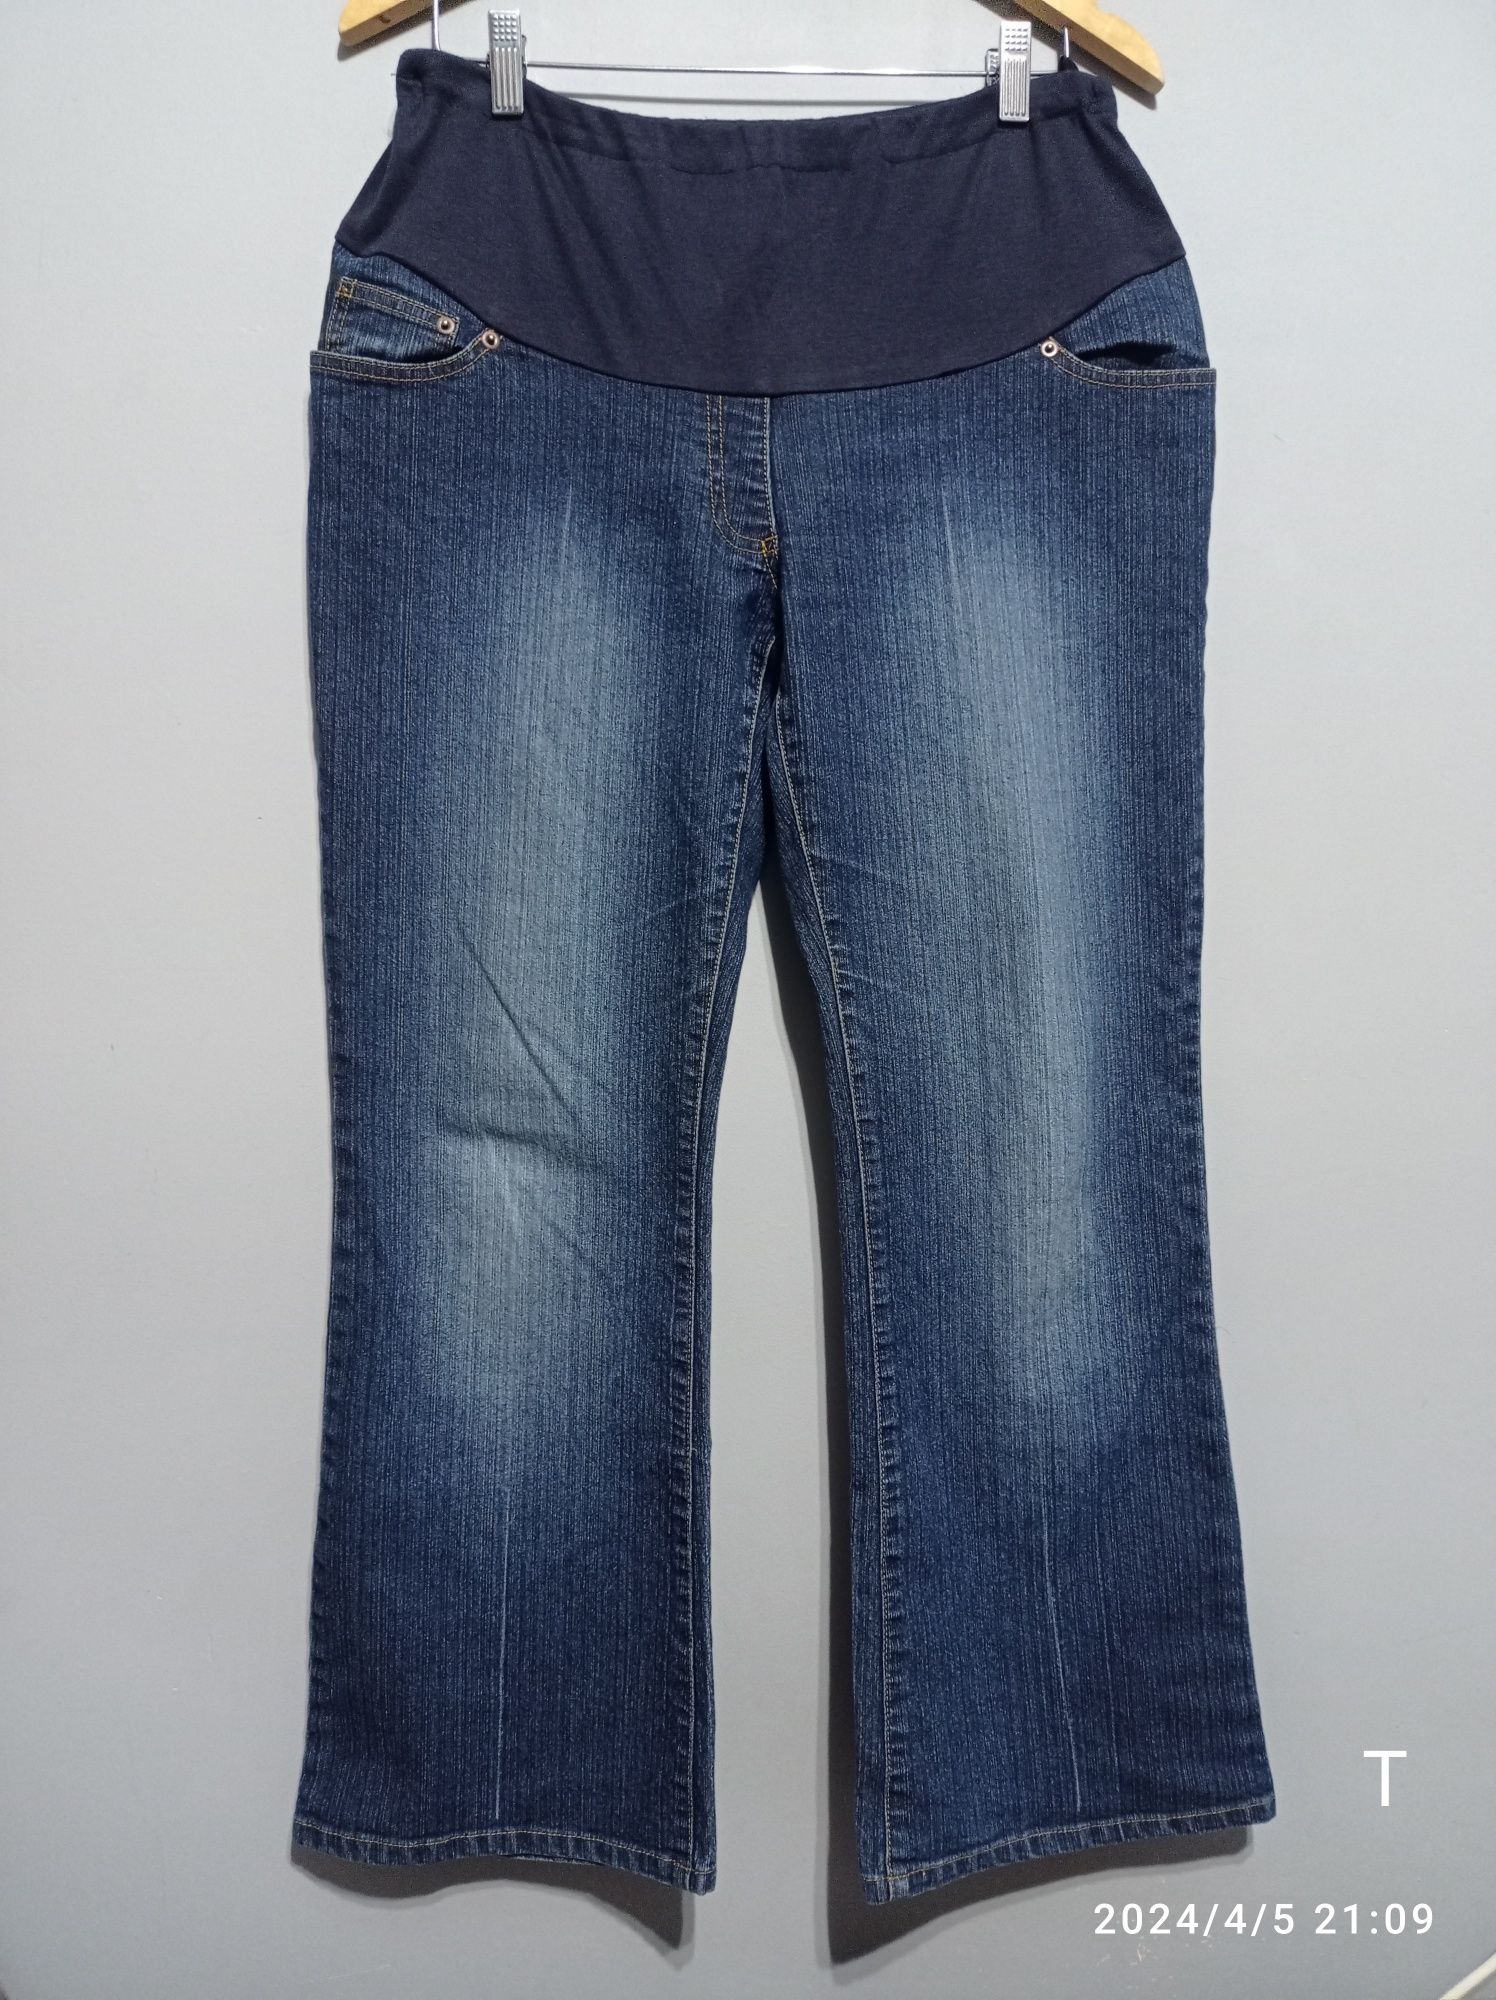 Spodnie L XL ciążowe biodrówki dzwony jeansy vintage dżinsy